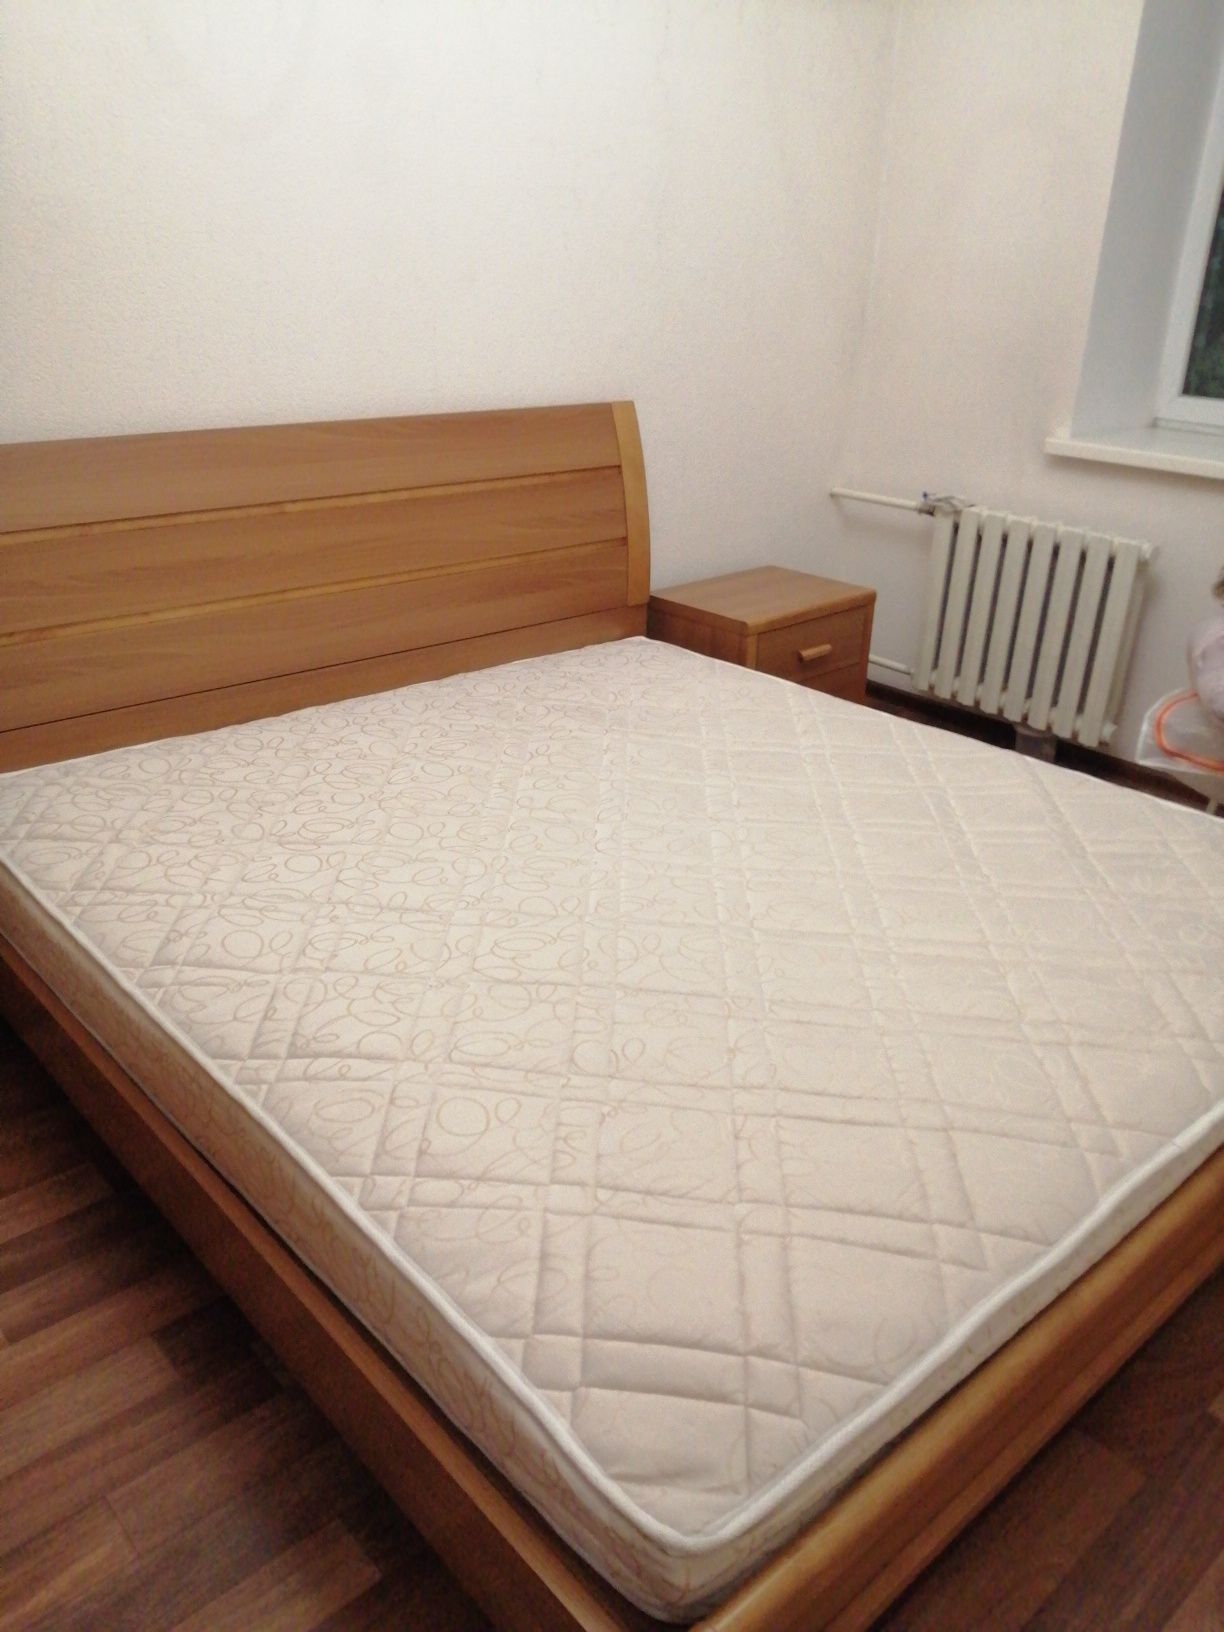 Кровать размером 1,8м х 2,0м, тумбы 2 шт